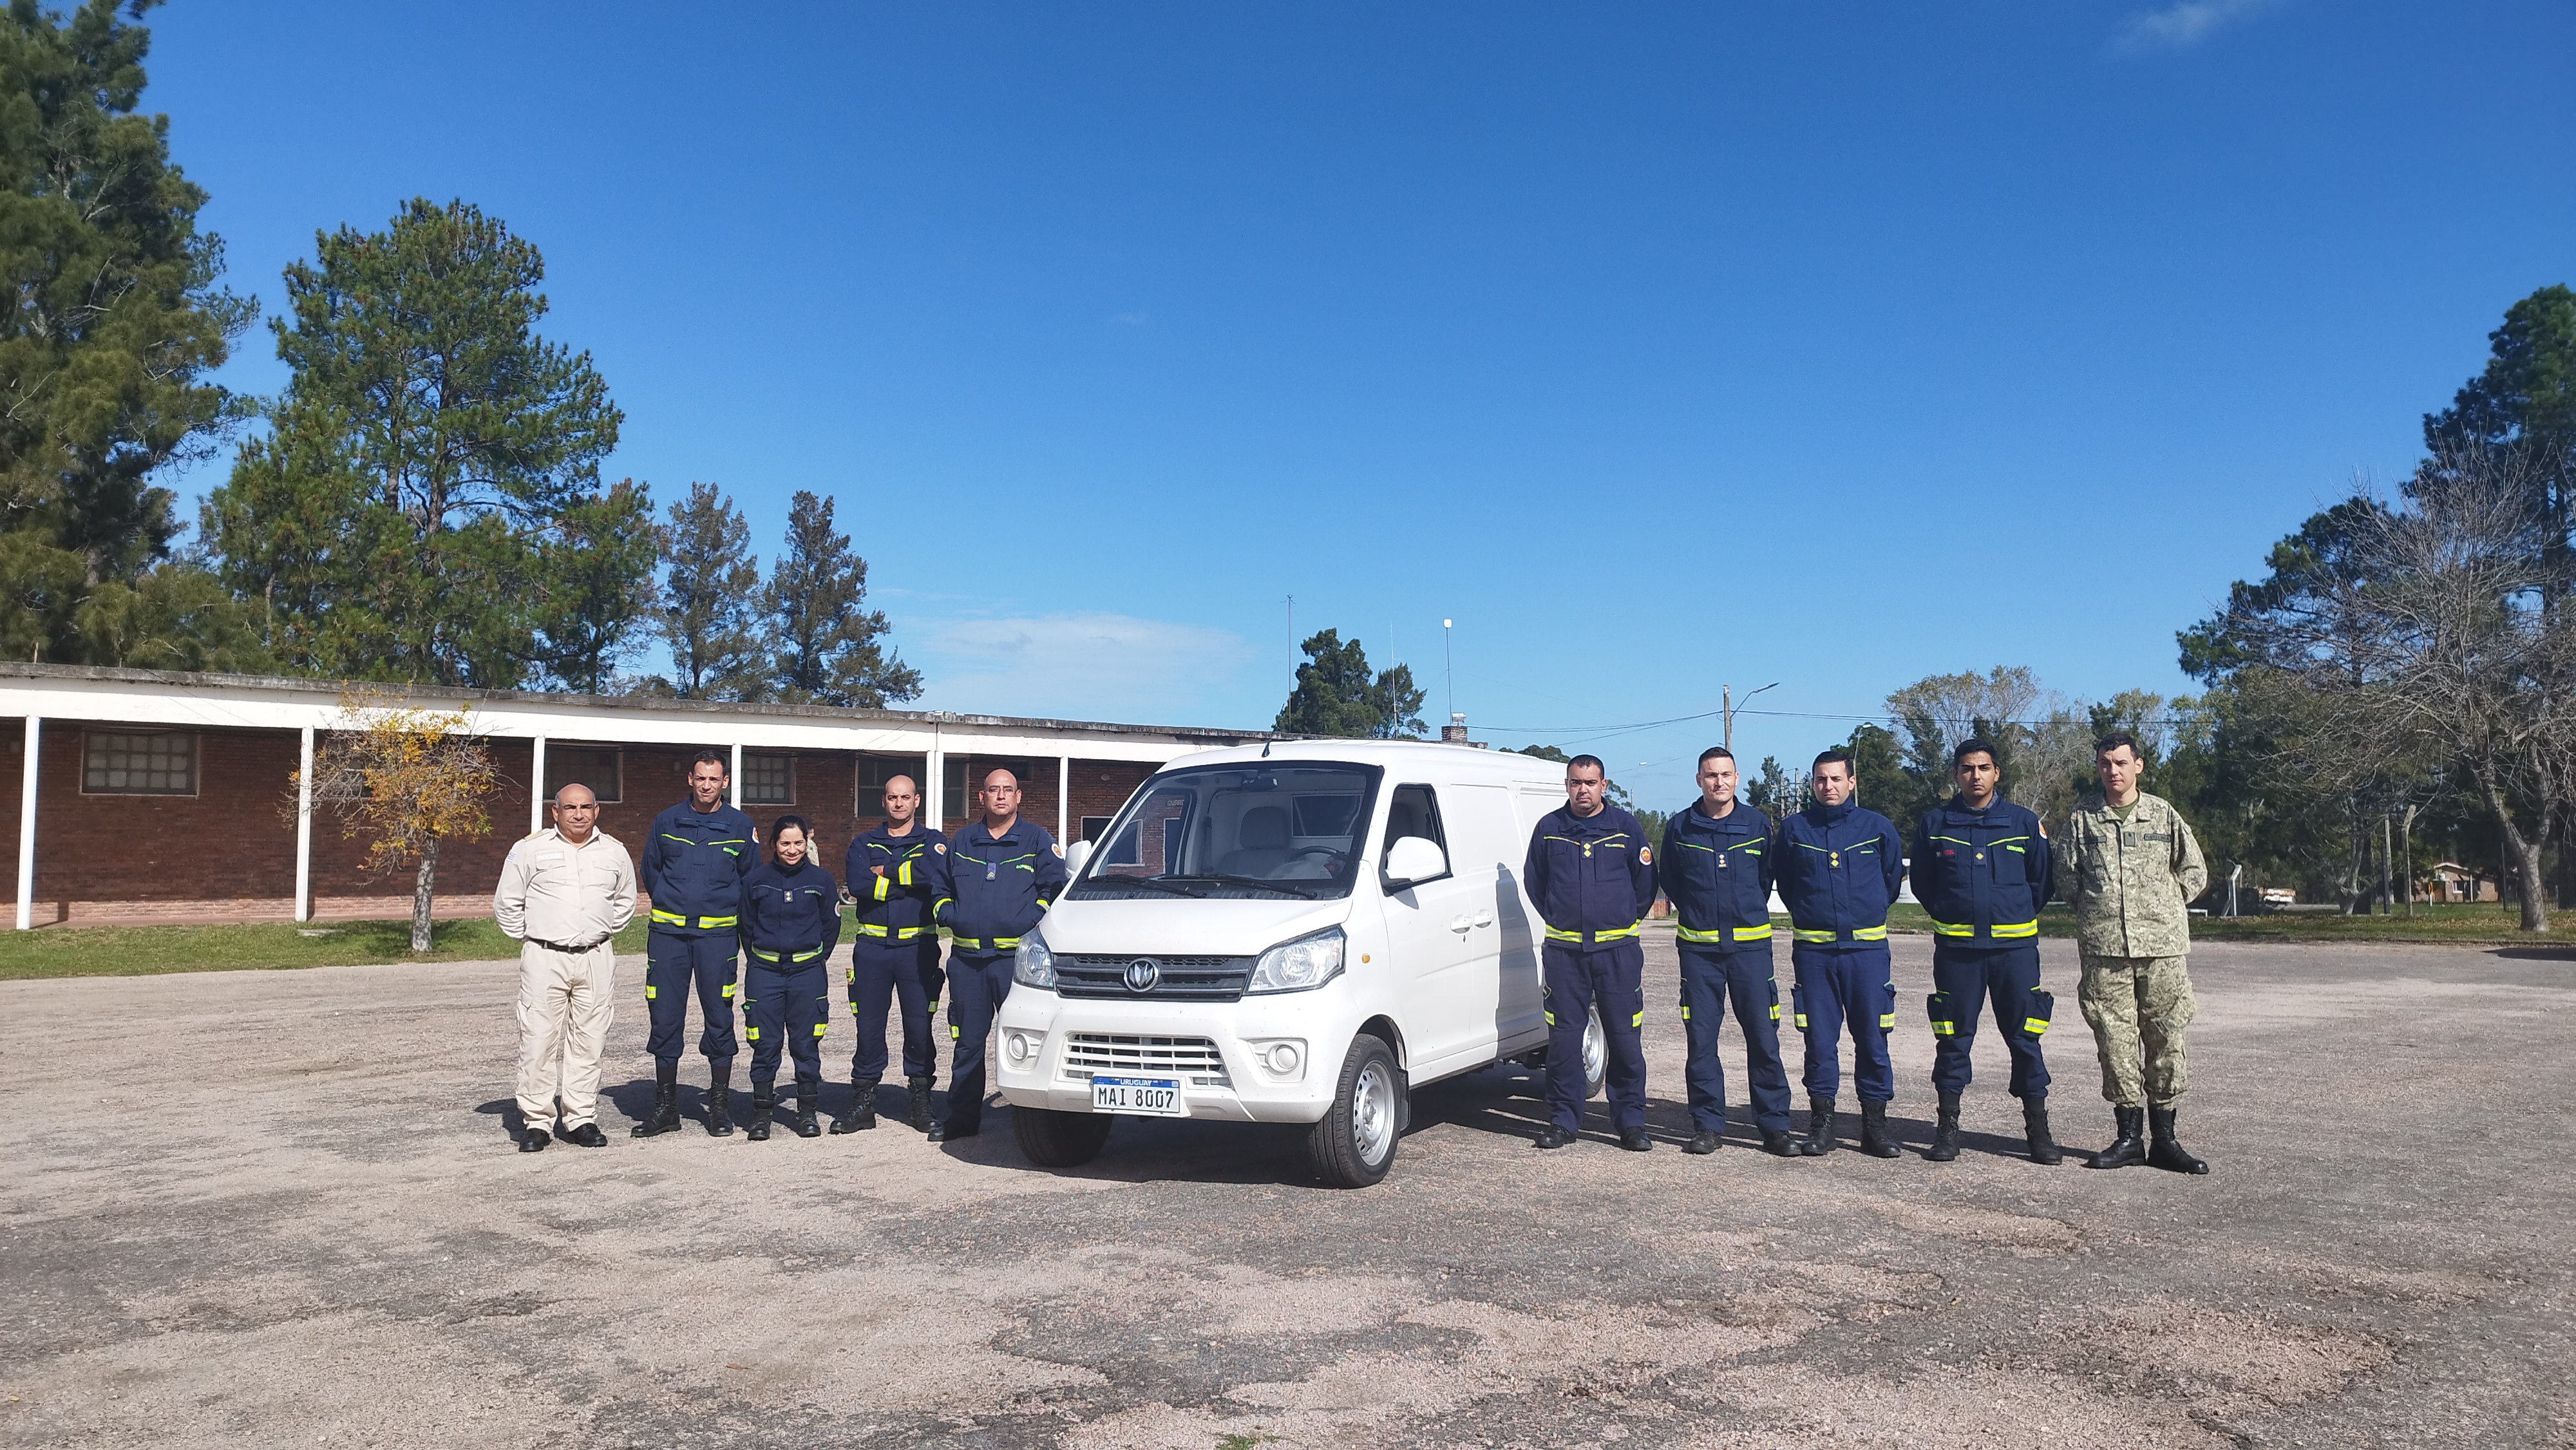 IMG_20230511_133935-q1bL1kh6.jpg - El pasado jueves 11 de mayo culminó la &#034;Capacitación para bomberos sobre manejo de incidentes relacionados con la movilidad eléctrica&#034; en donde se capacitaron a 25 bomberos en la Base Aérea de Santa Bernardina del departamento de Durazno. Esta capacitación es la continuación del primer curso regional que organizó la plataforma MOVE del Programa de la Naciones Unidas para el Medio Ambiente a finales de 2022 en Paraguay, donde participaron y se formaron dos bomberos instructores de Uruguay.